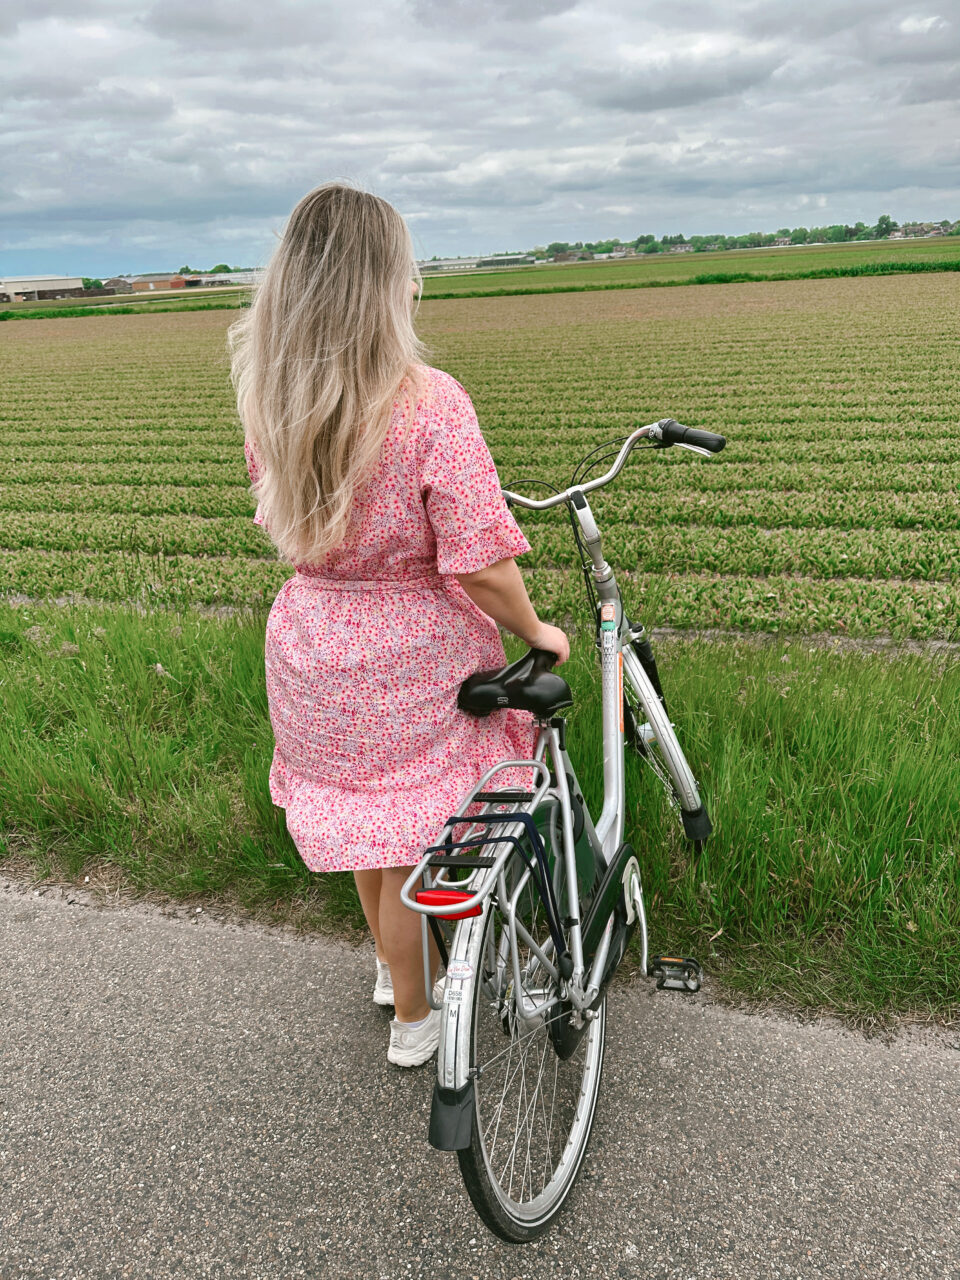 Jente i rosa kjole står med en sykkel foran en grønn åker. Foto